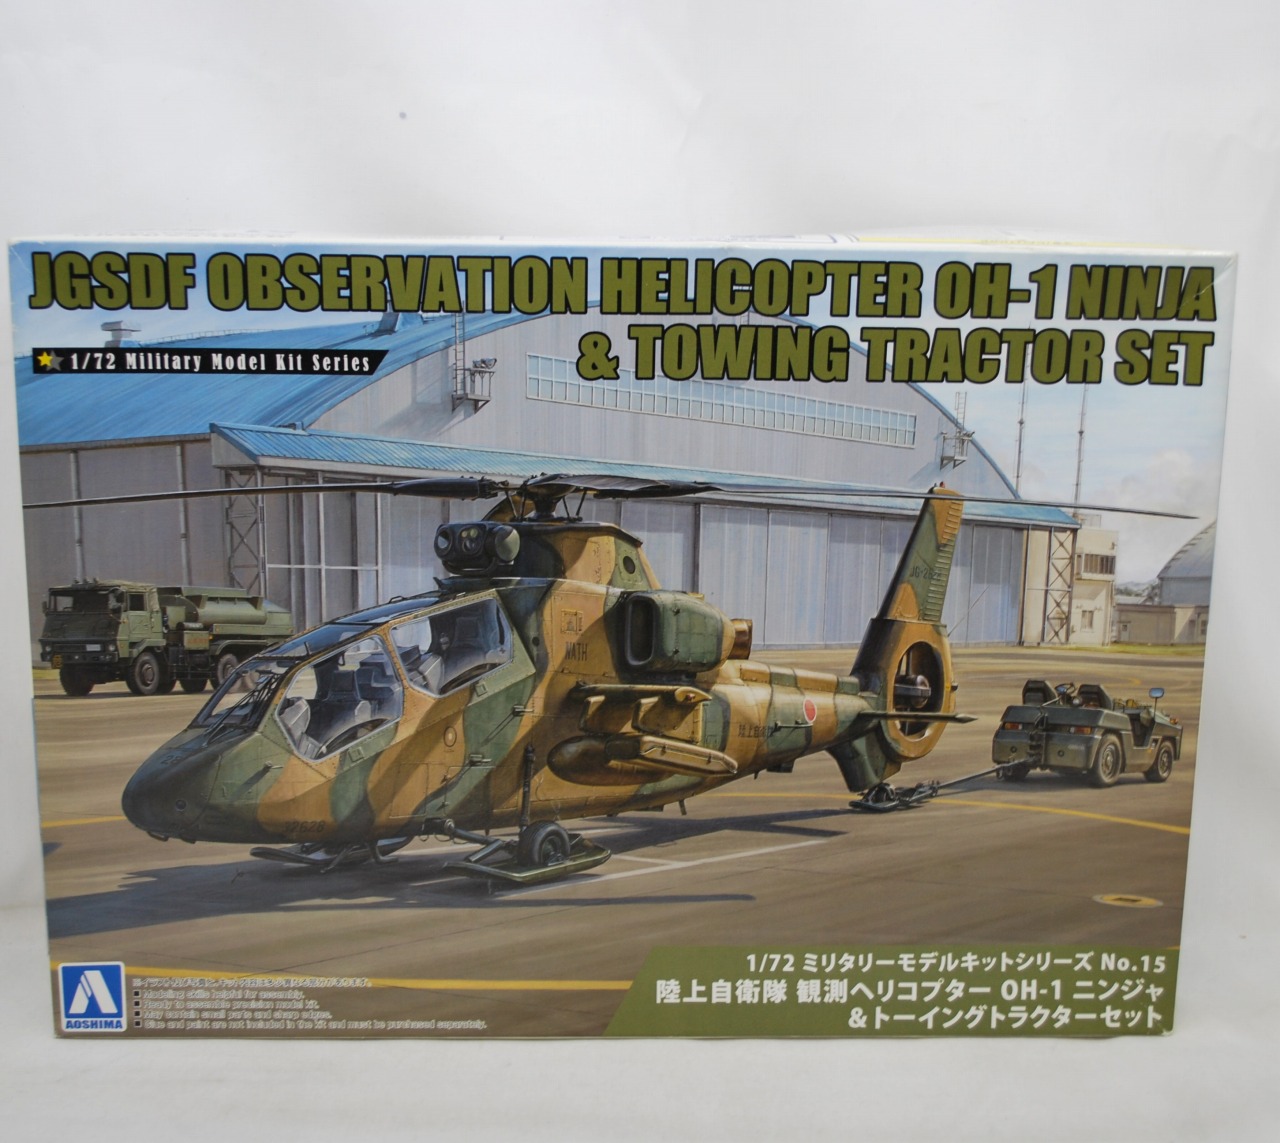 アオシマ 1/72 ミリタリーモデルキット No.15 陸上自衛隊 観測ヘリコプター OH-1 ニンジャ&トーイングトラクターセット